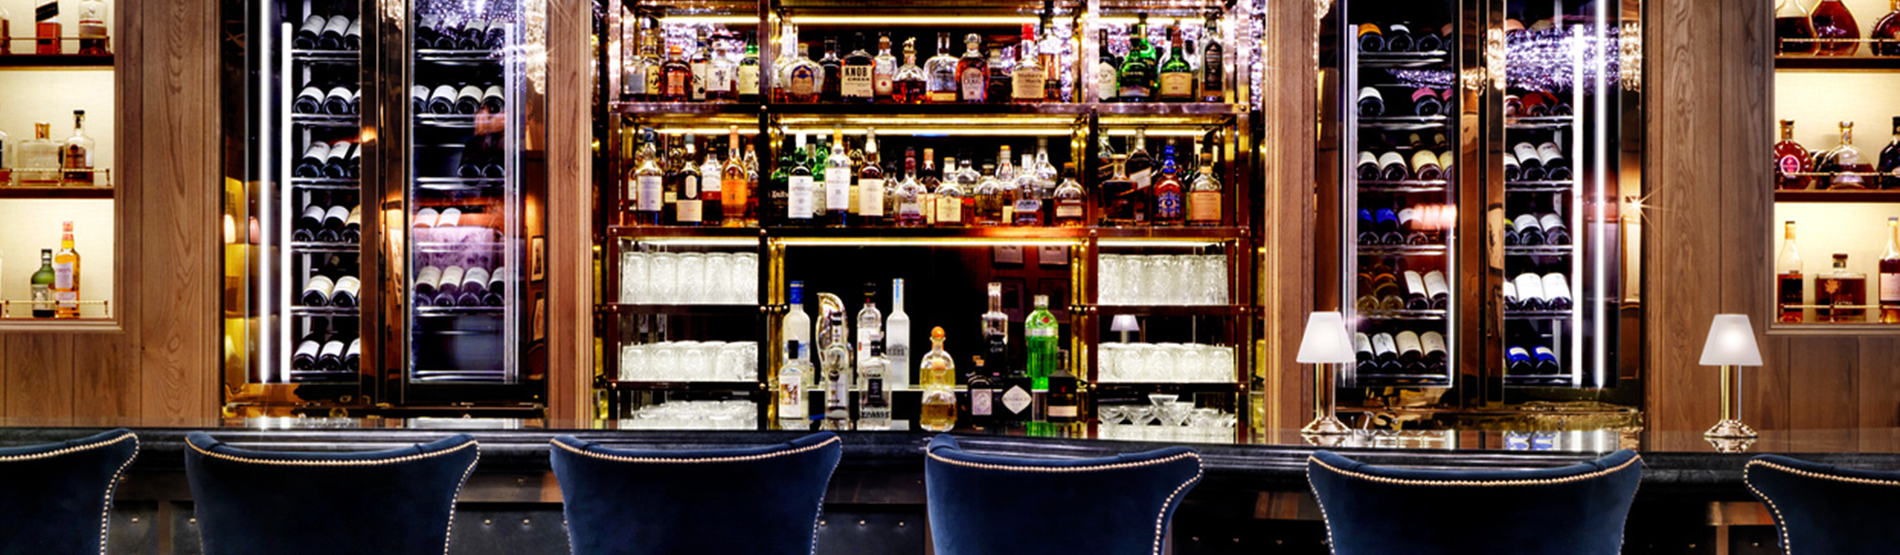 The K Bar with blue velvet bar stools